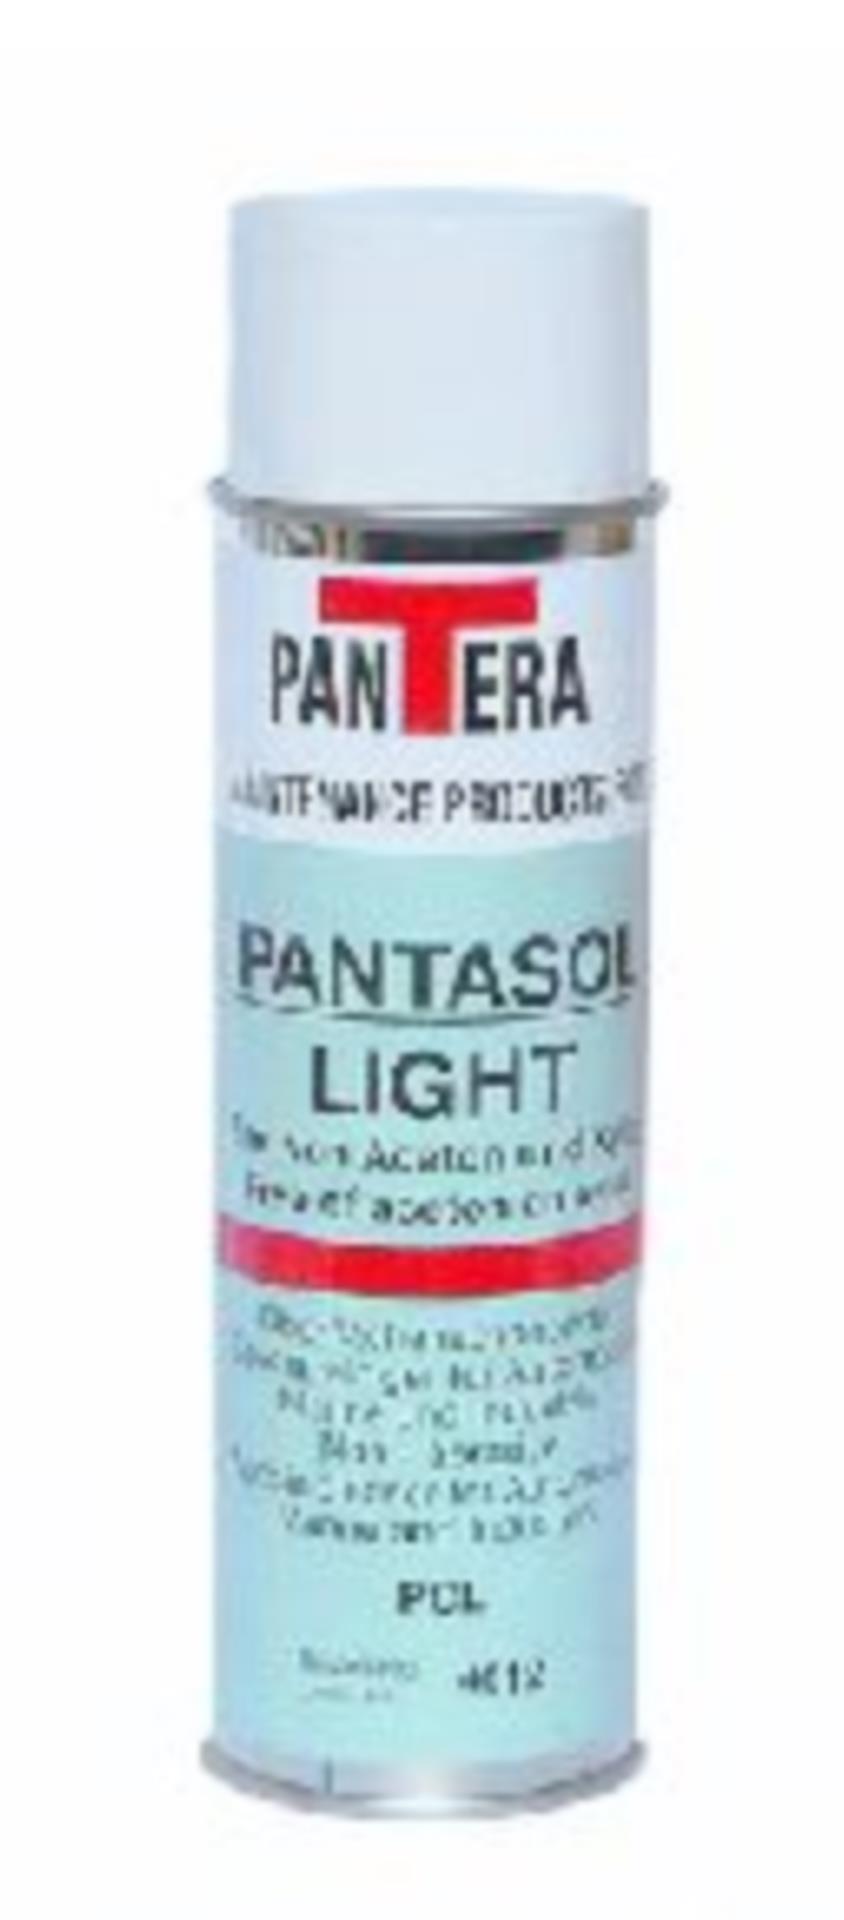 Pantera Pantasol Light, 500 ml